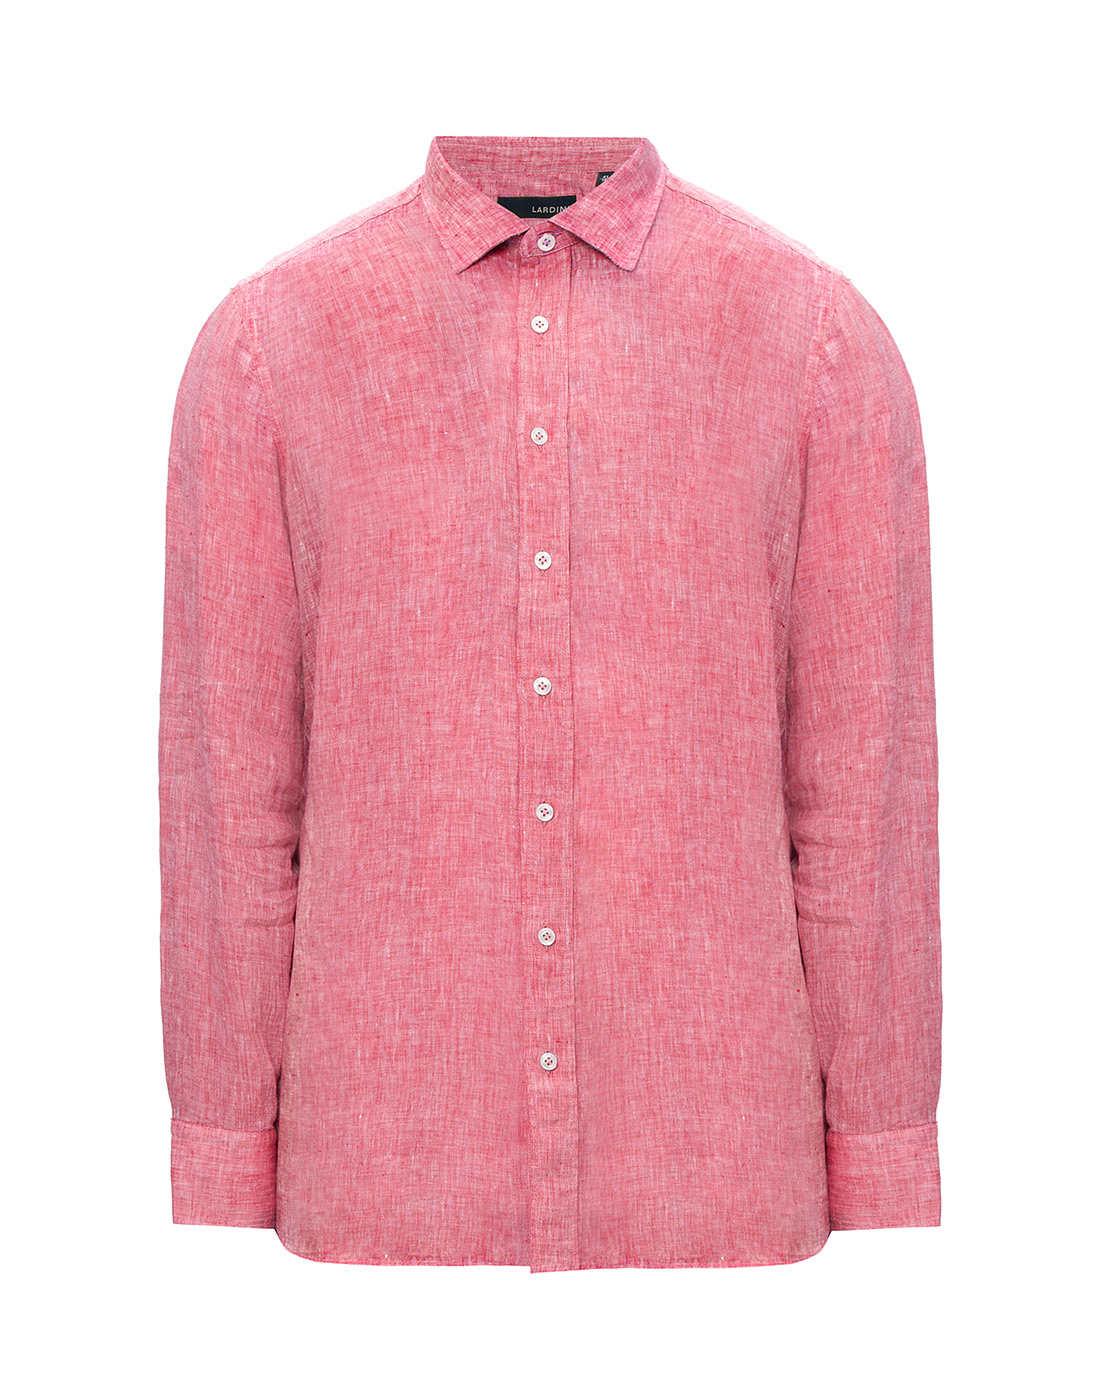 Мужская красная льняная рубашка Lardini SEIDANTE CNC2014 600-1